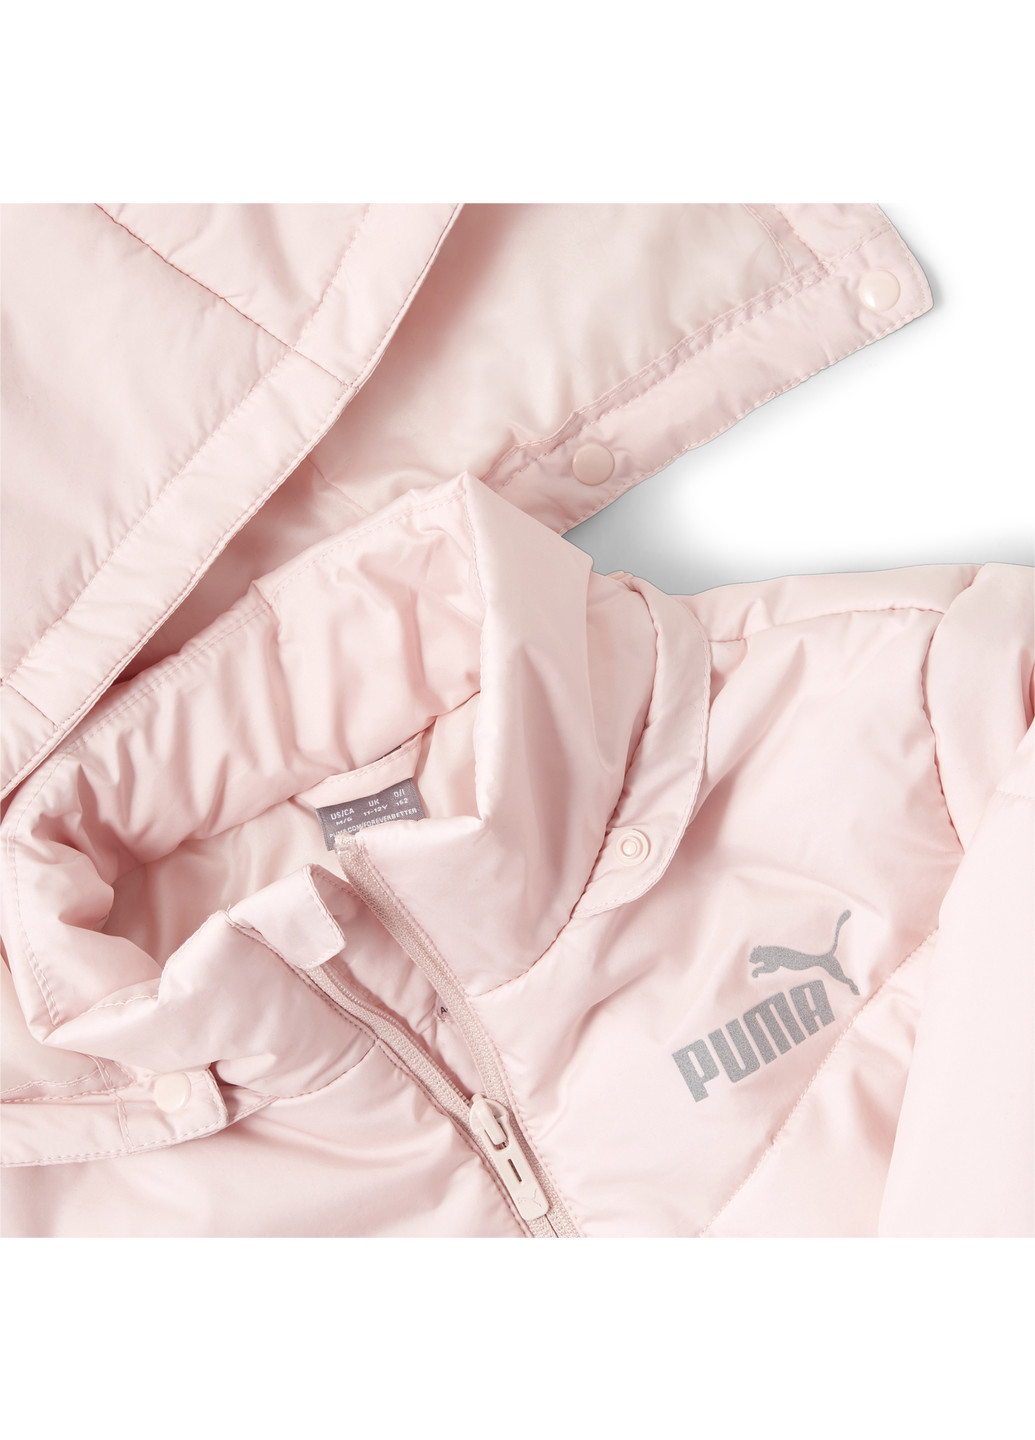 Рожева демісезонна дитяча куртка essentials padded hd youth jacket Puma